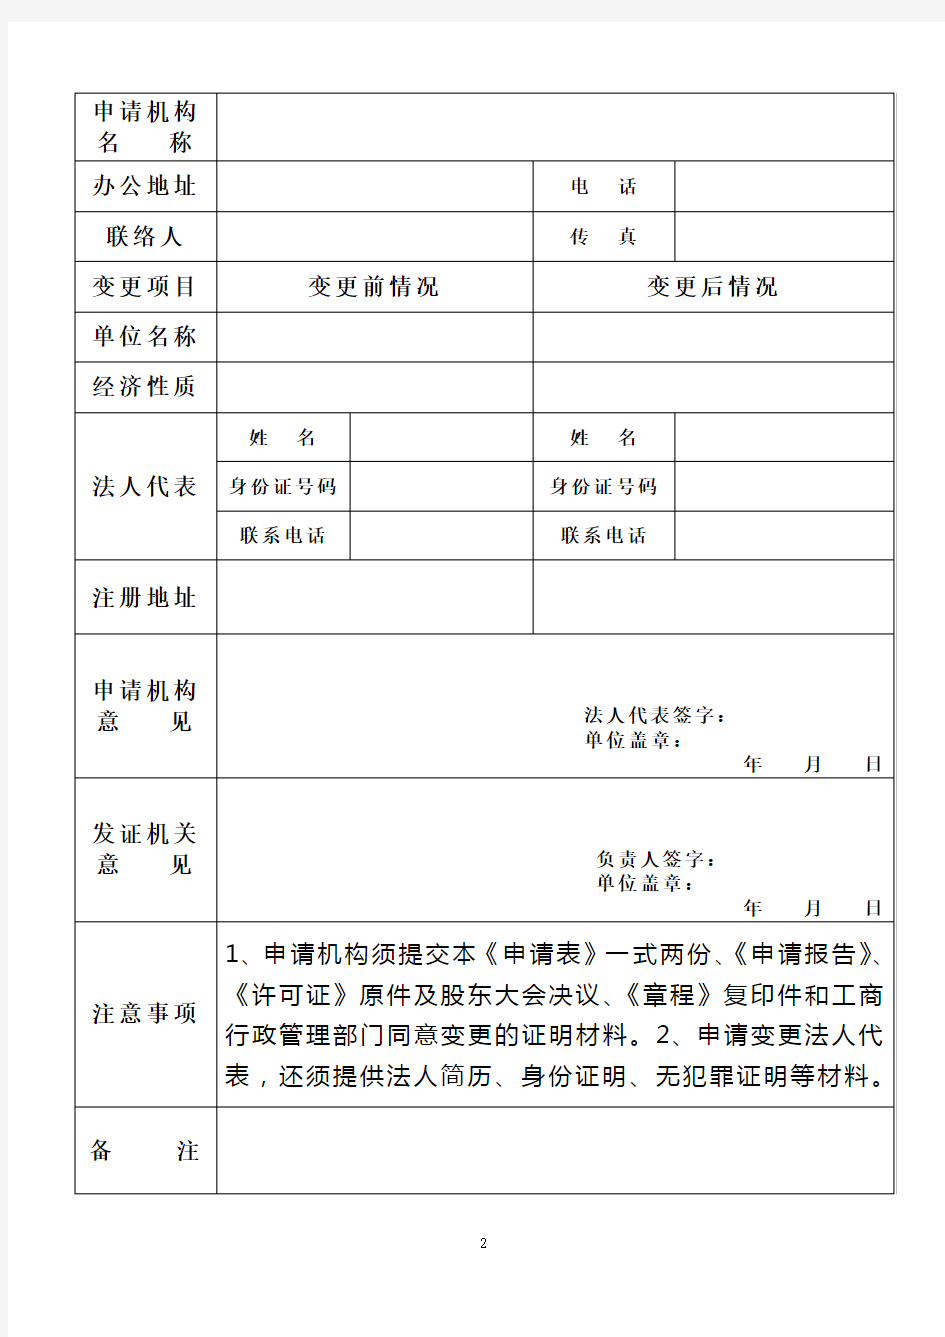 变更《广播电视节目制作经营许可证》申请表(上海市)